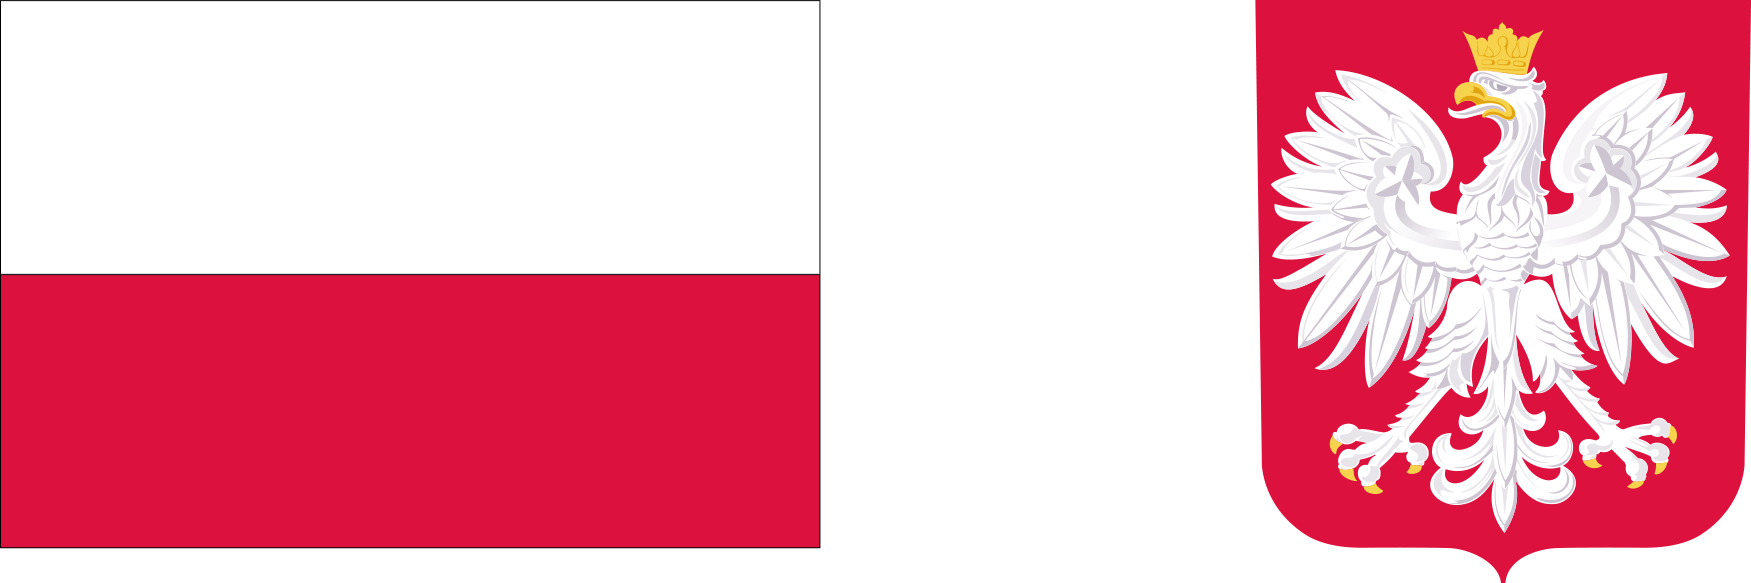 Loga do projektu pilotażowego Aktywny rodzic, flaga Polski (Rzeczypospolitej Polskiej są kolory biały i czerwony, ułożone w dwóch poziomych, równoległych pasach tej samej szerokości, z których górny jest koloru białego, a dolny koloru czerwonego), godło Polski - czerwona tarcza na niej biały orzeł w koronie.